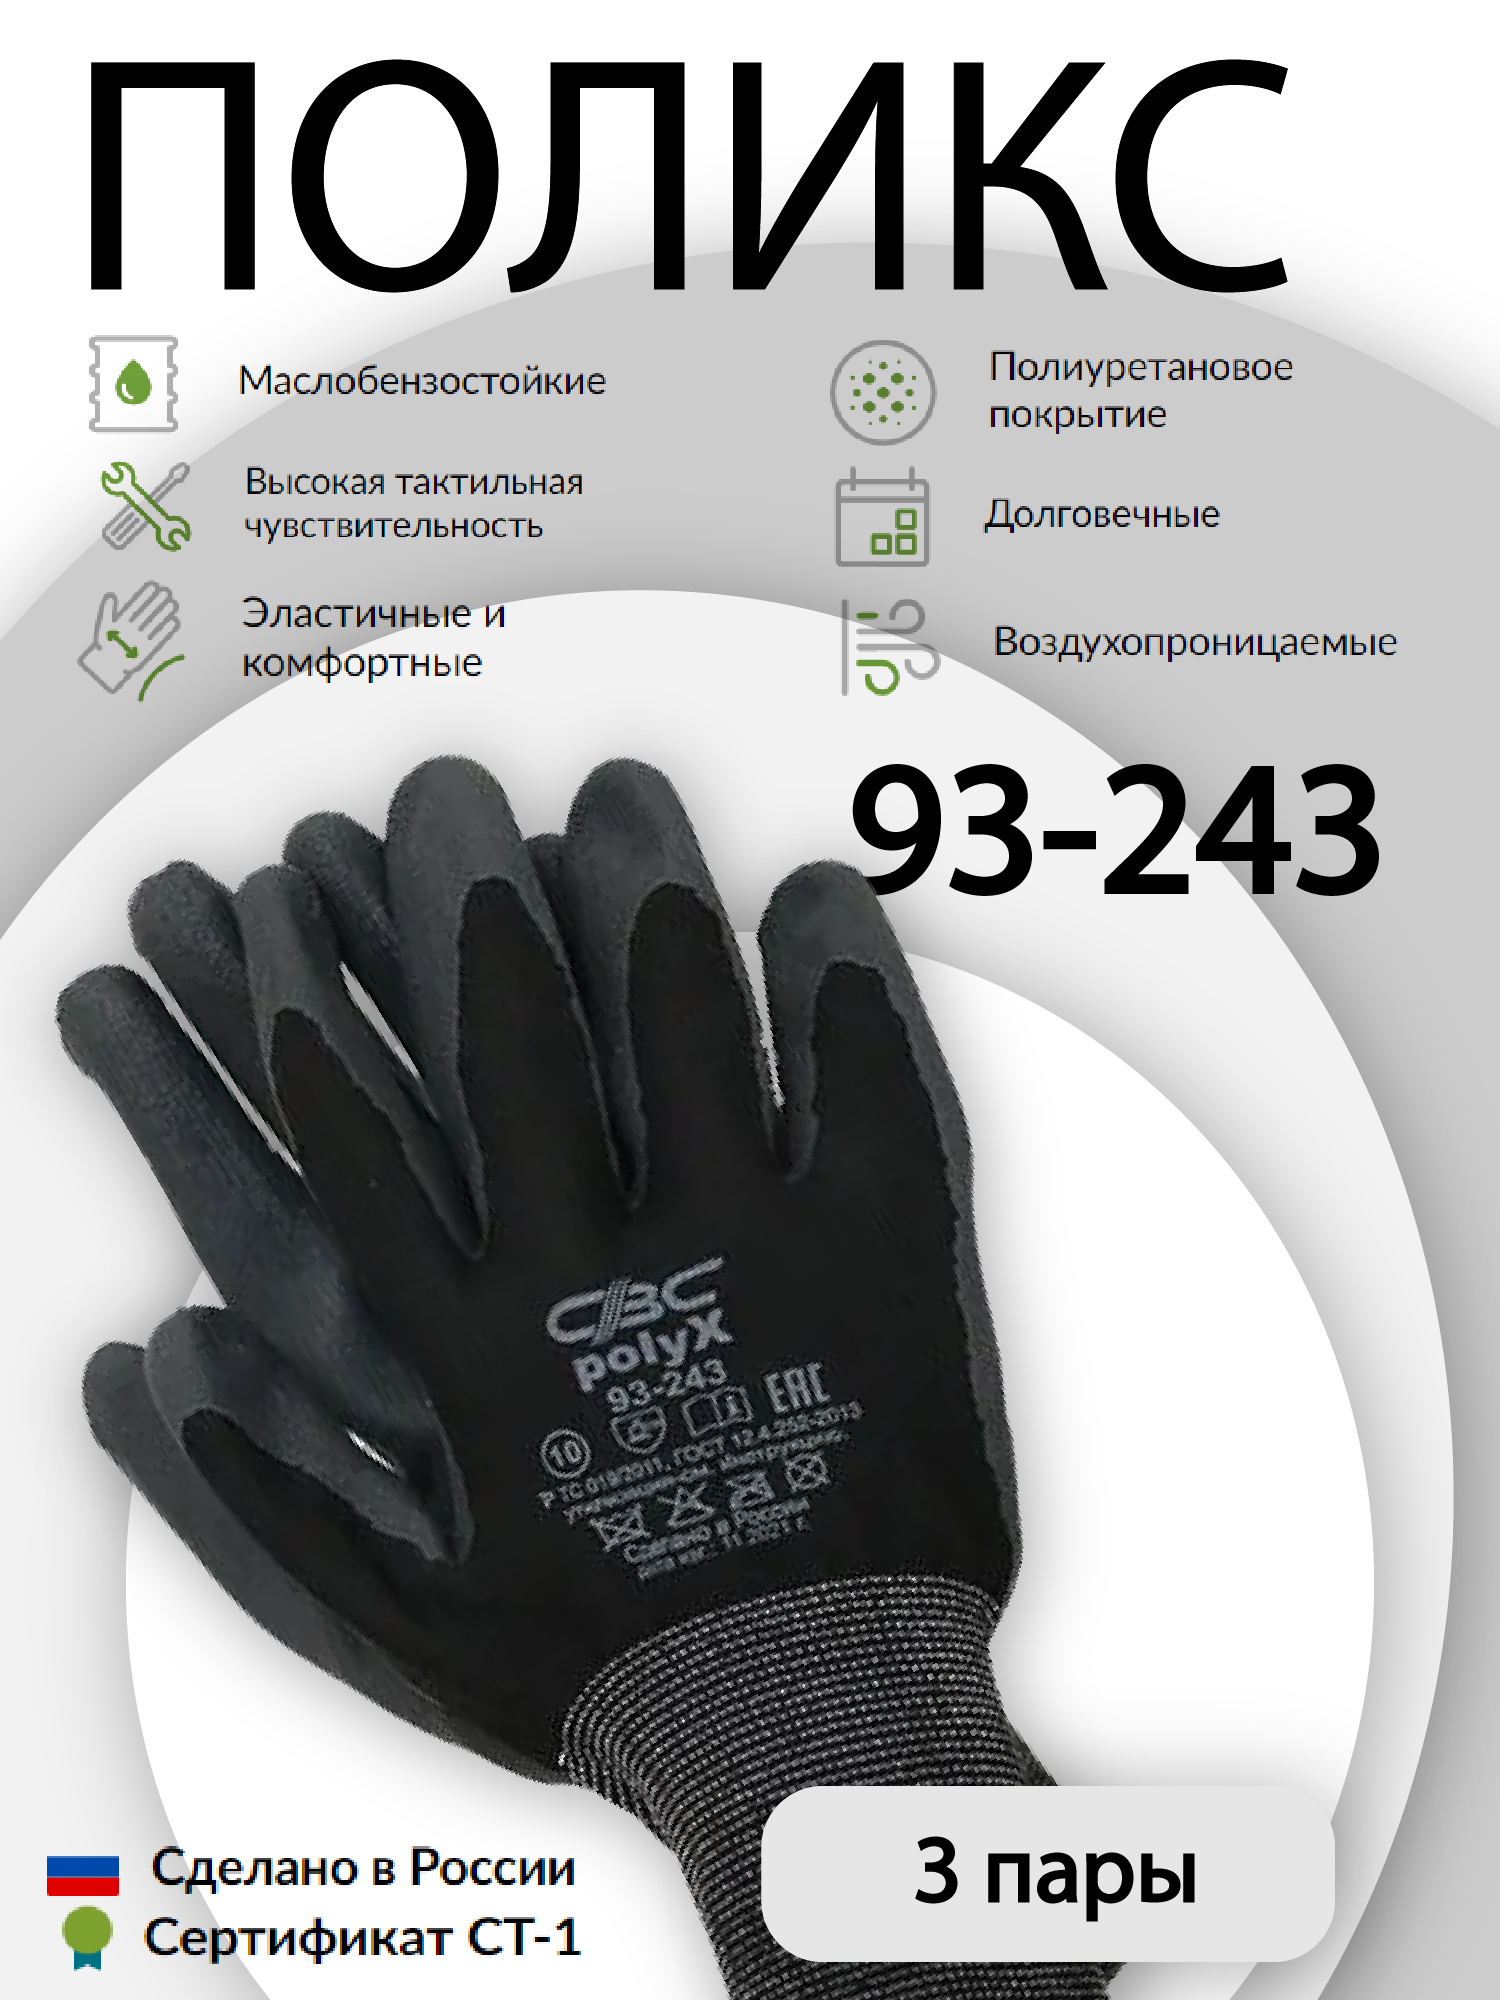 Перчатки защитные СВС ПОЛИКС 93-243 эластичные, с полиуретановым покрытием 3 пары